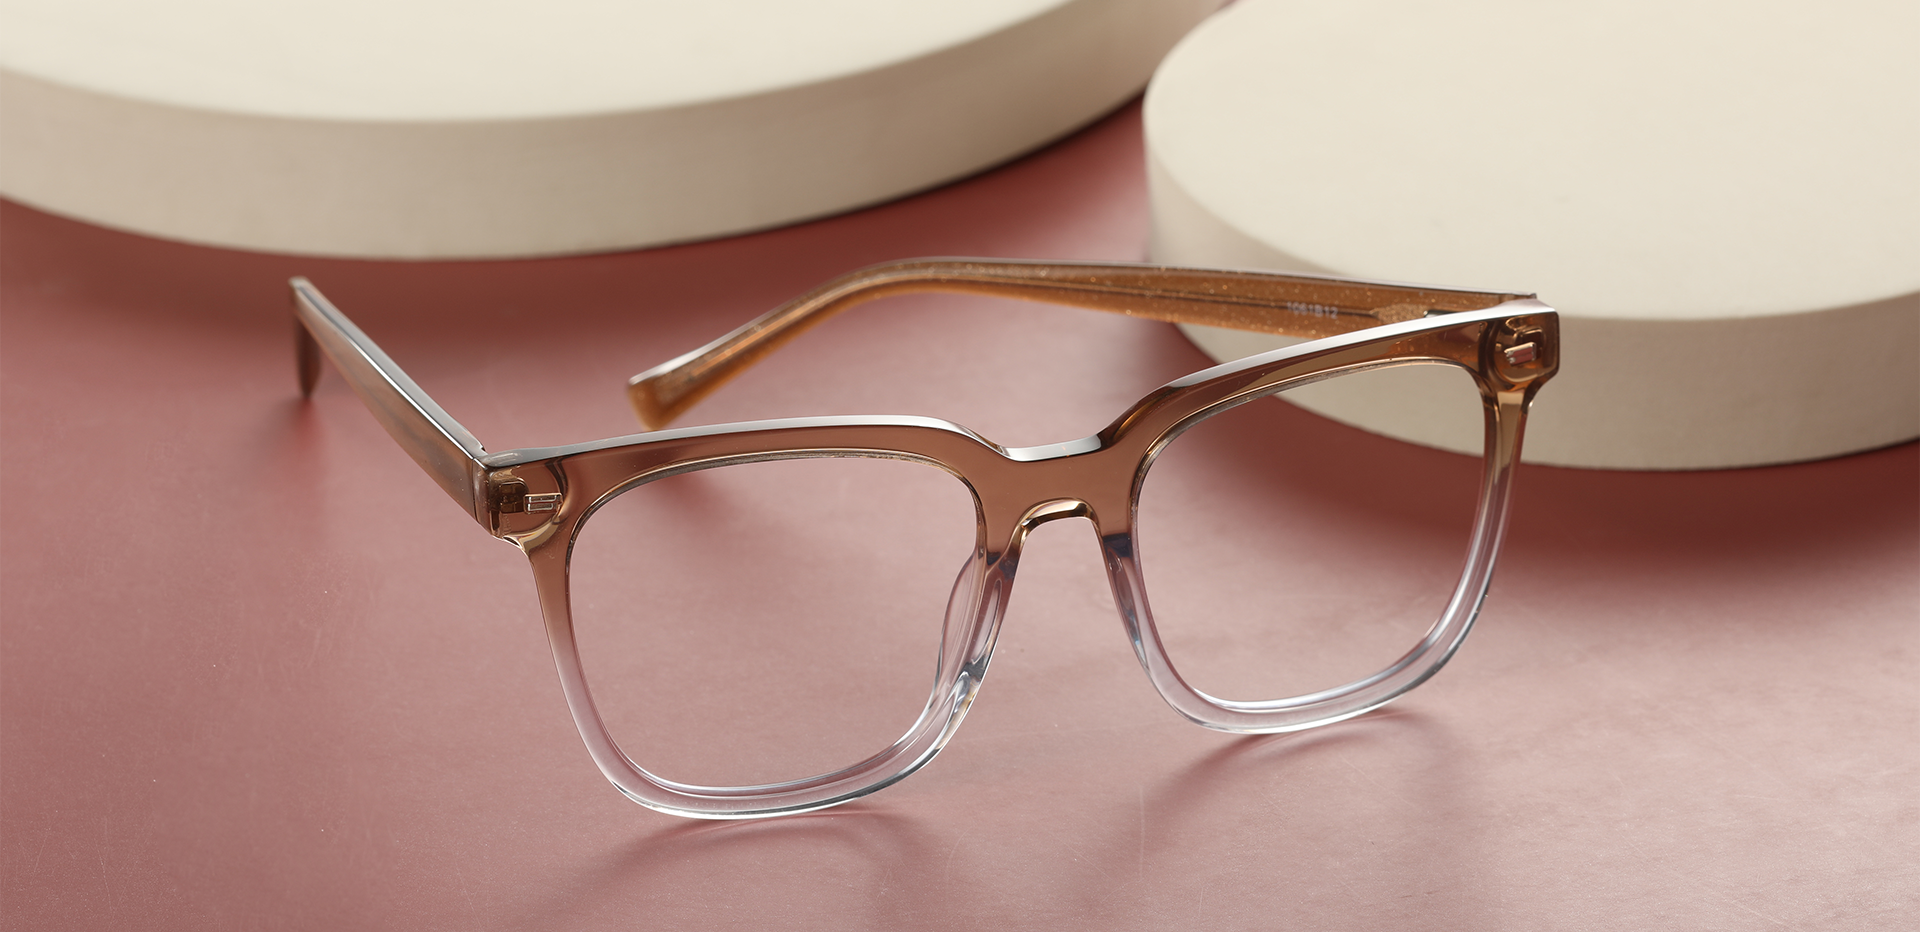 Horton Oversized Square Prescription Glasses - Brown